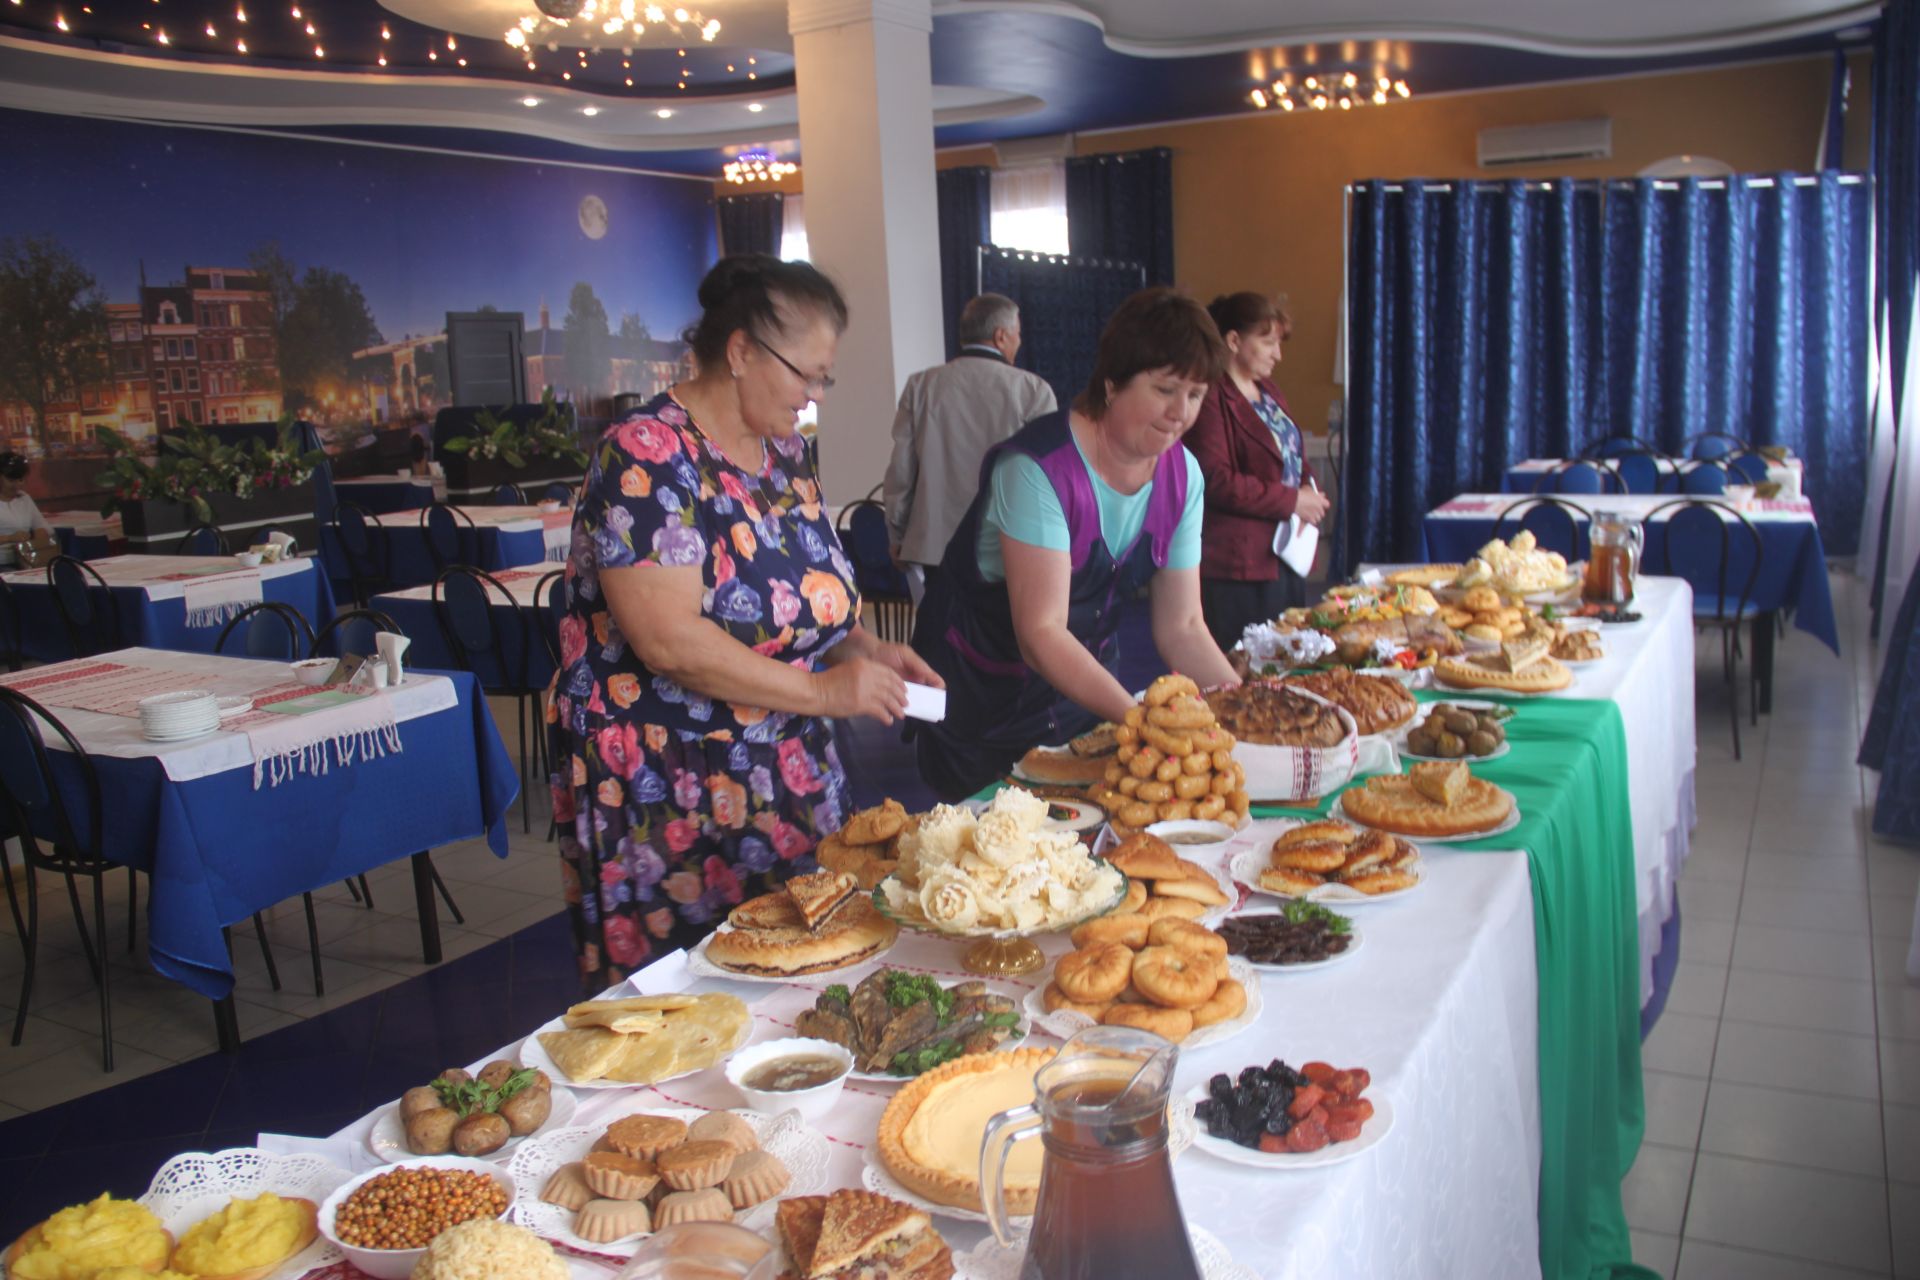 Кафе «Созвездие» в Базарных Матаках  угощало своих гостей татарскими блюдами.ФОТО